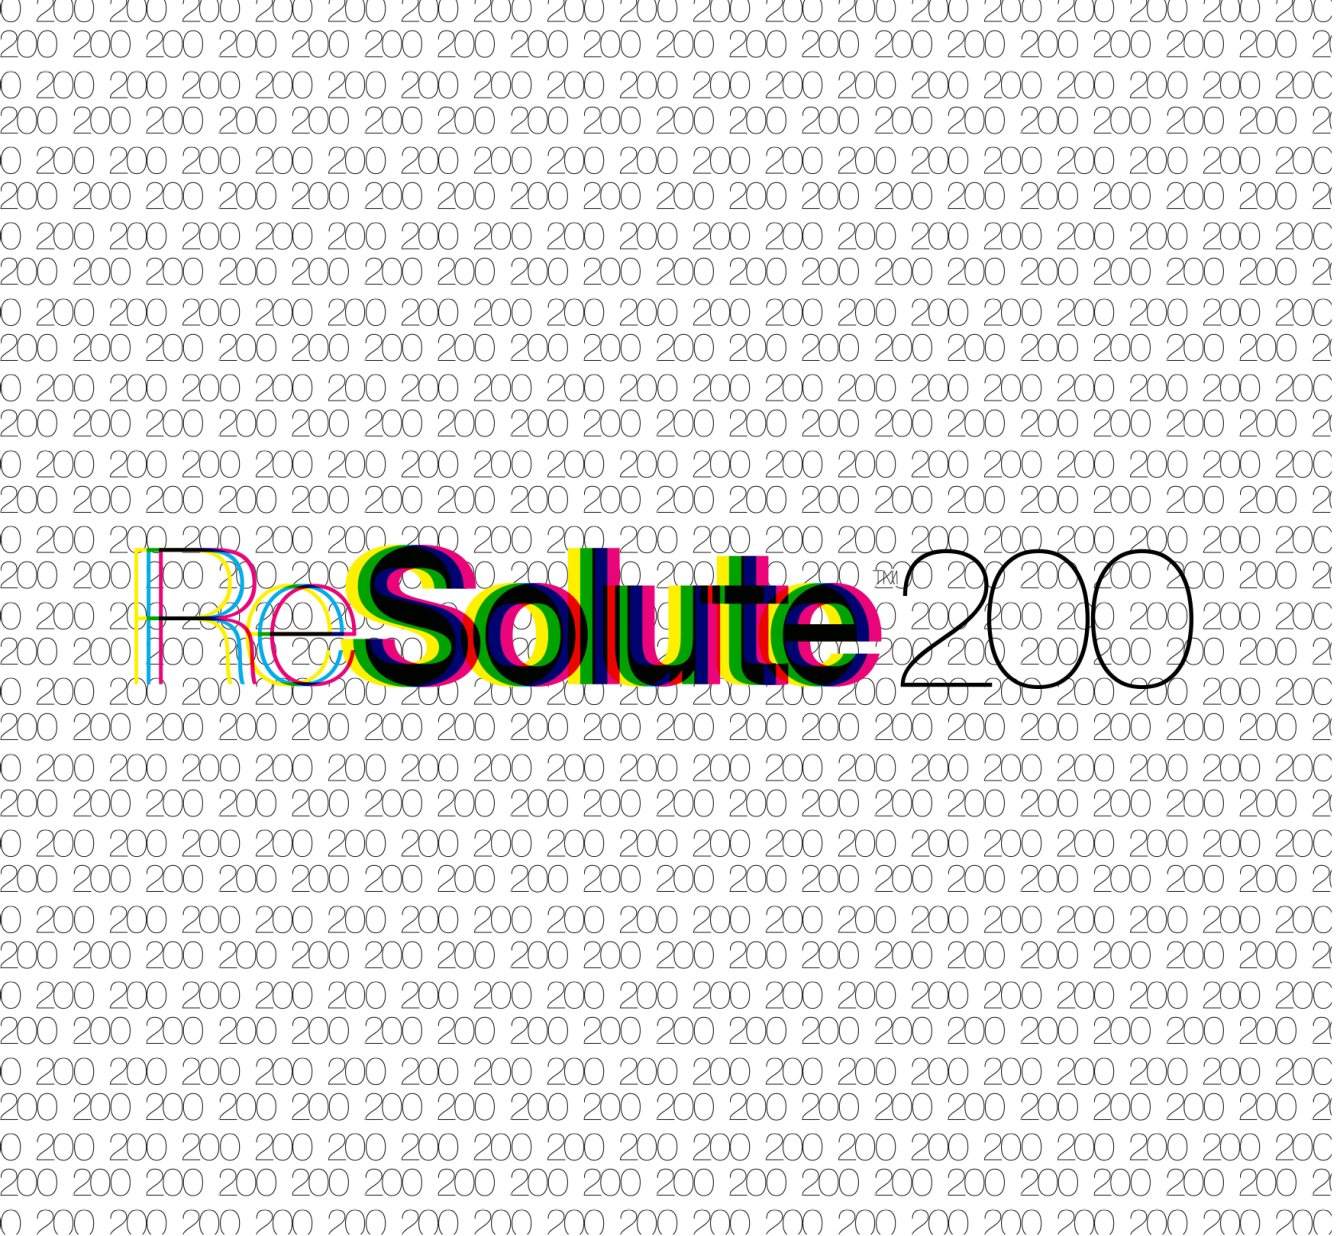 Resolute 200 - フライヤー表